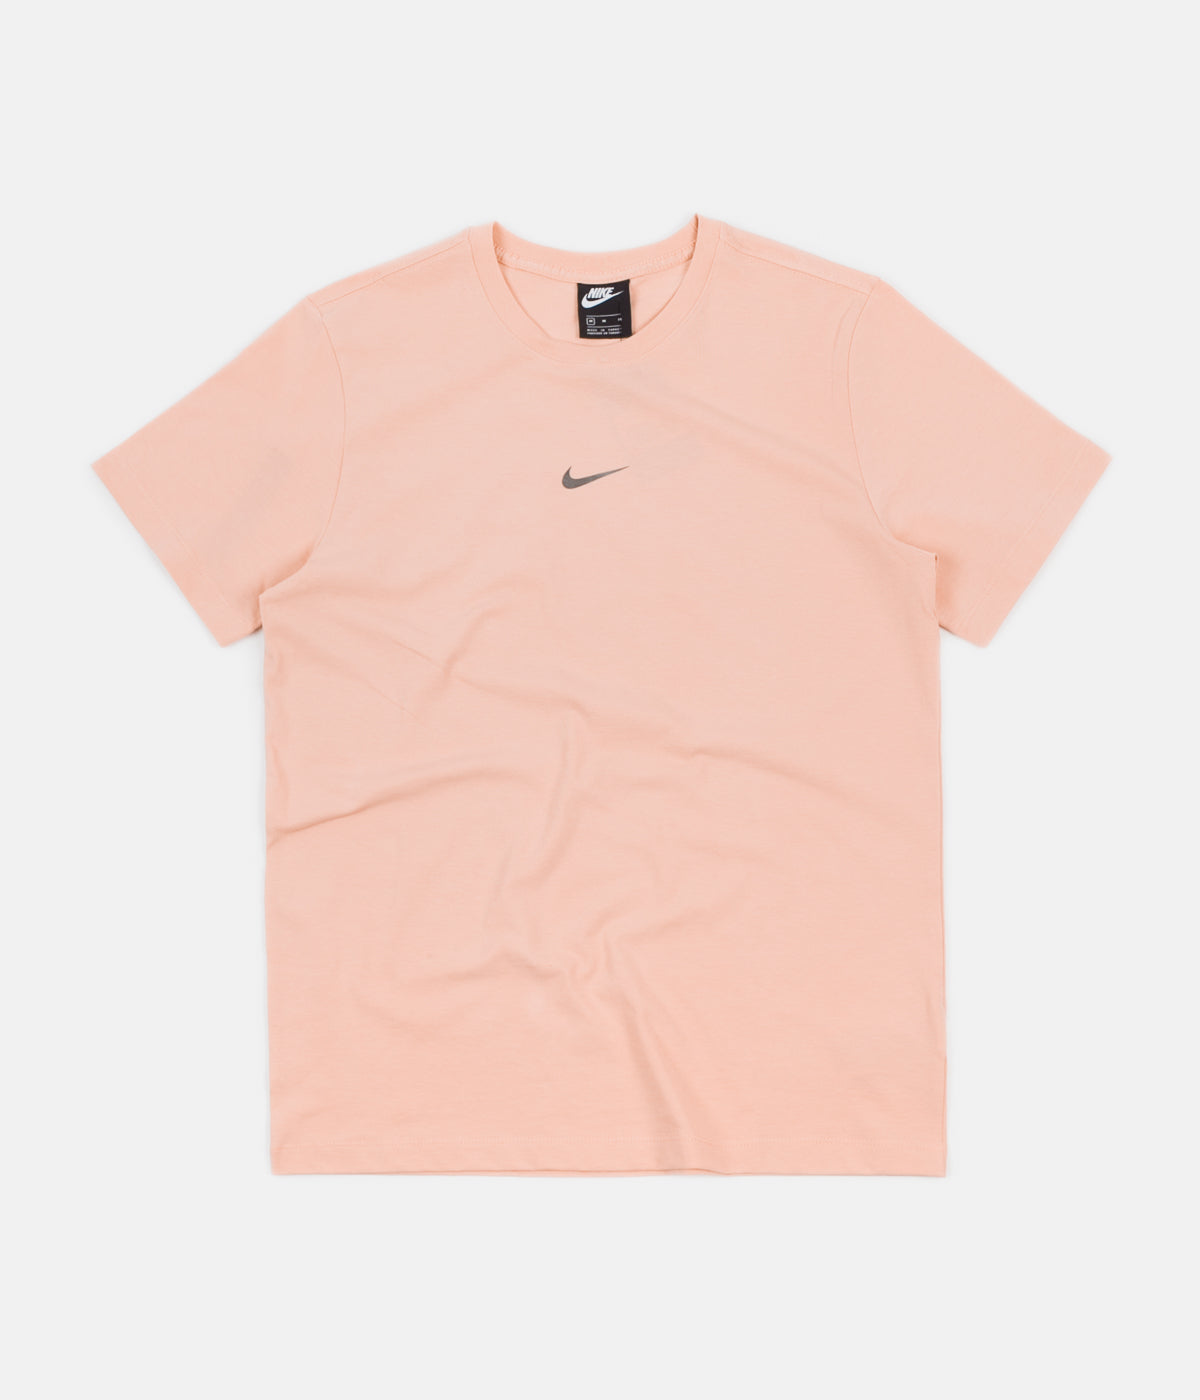 peach nike shirt